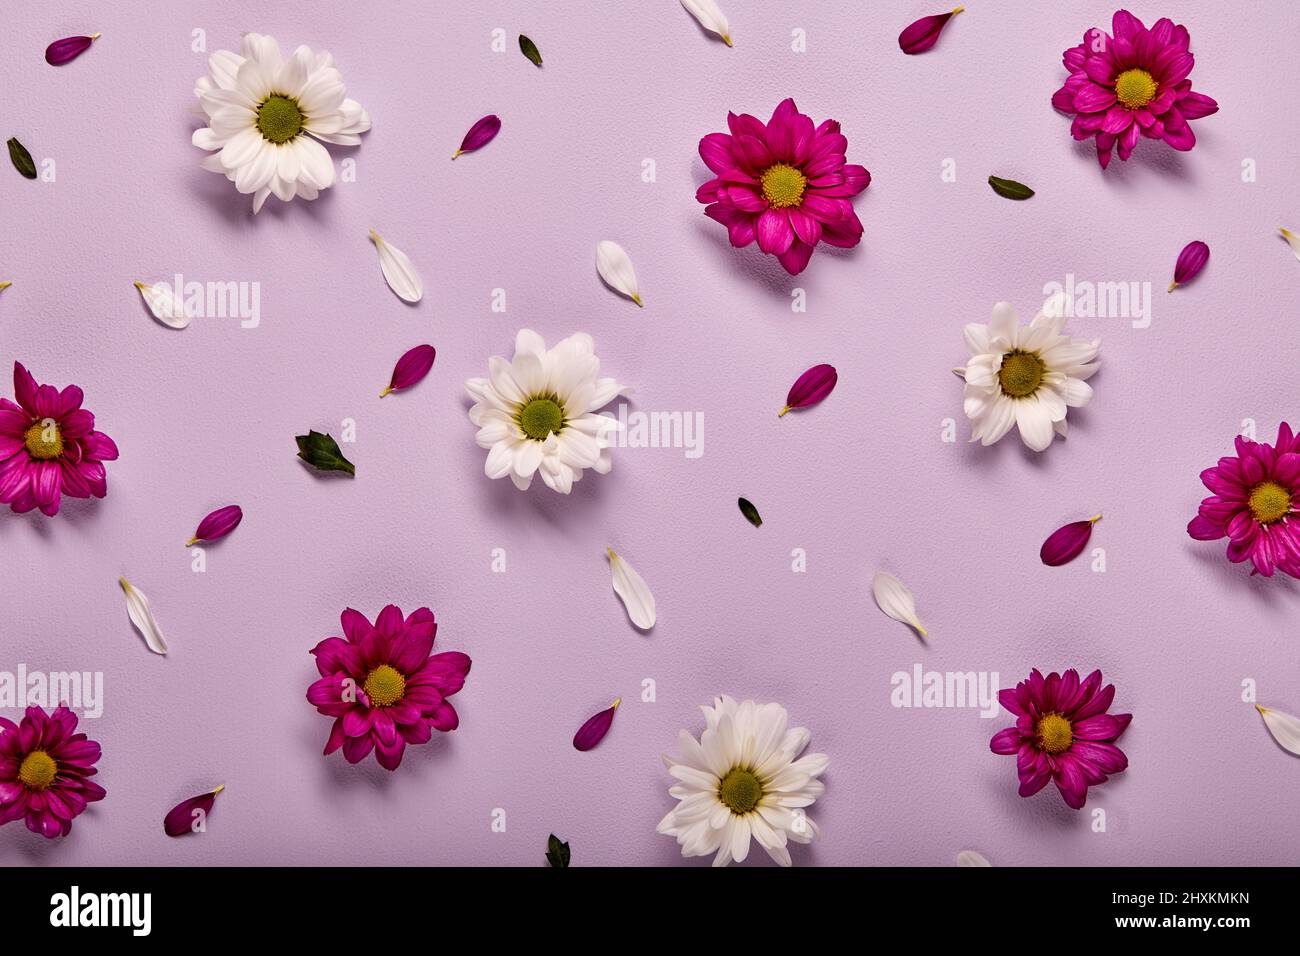 Belle fleur de gerbera rose et blanche isolée sur fond de mur rose pastel, plat. Fleur, flore, détails concept de design. Vue du dessus Banque D'Images